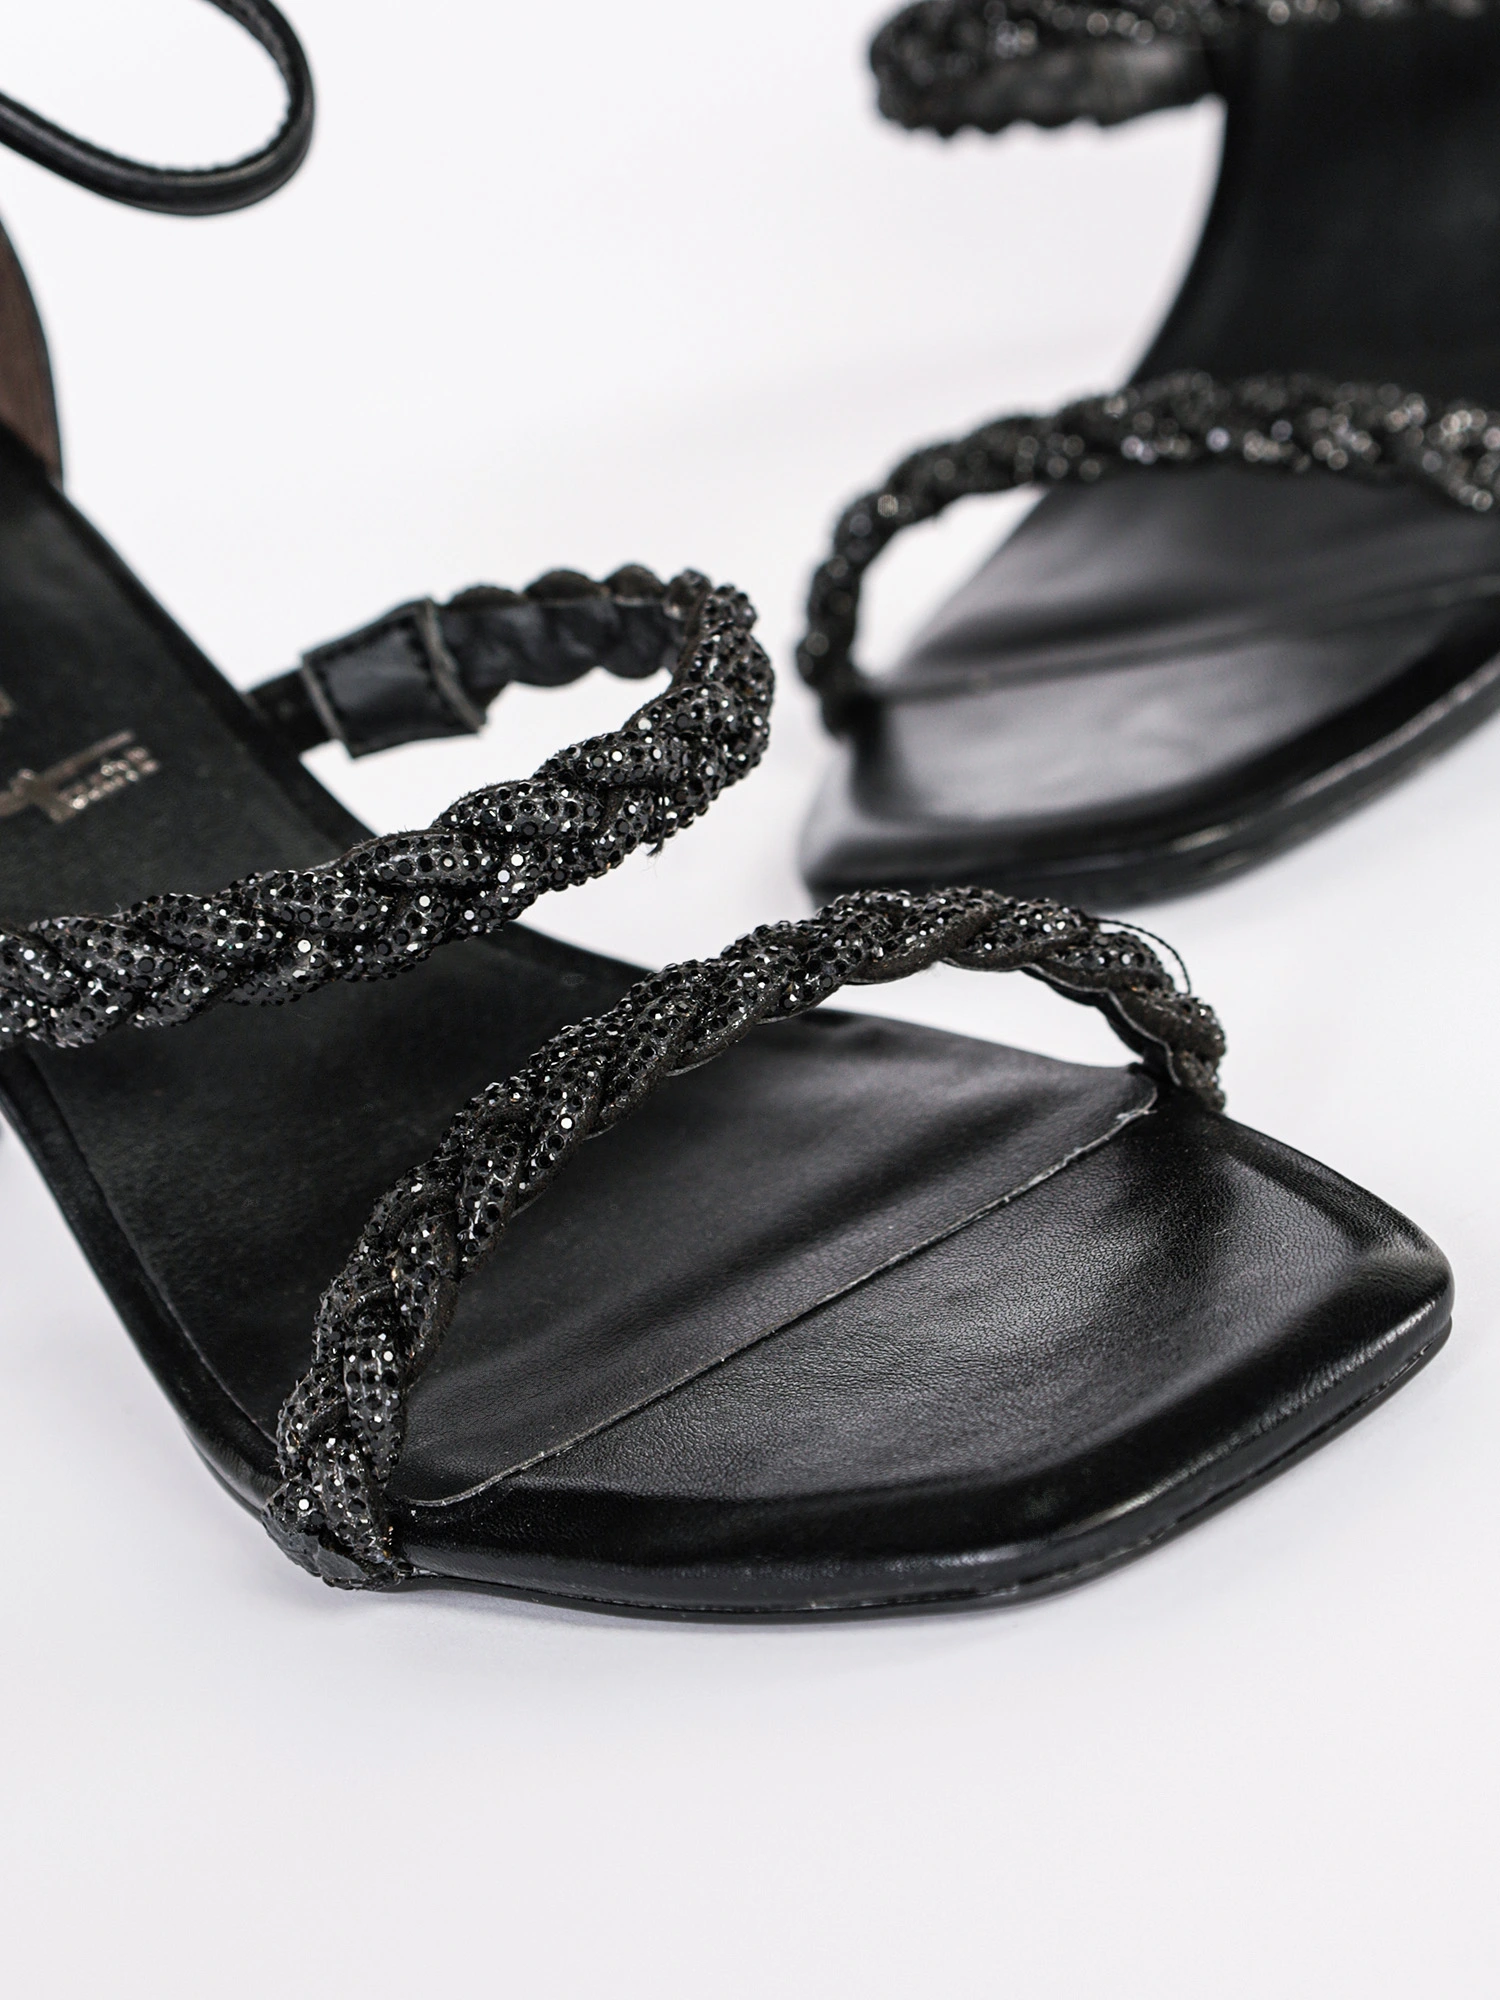 Босоножки черного цвета с элементами плетения на высоком каблуке